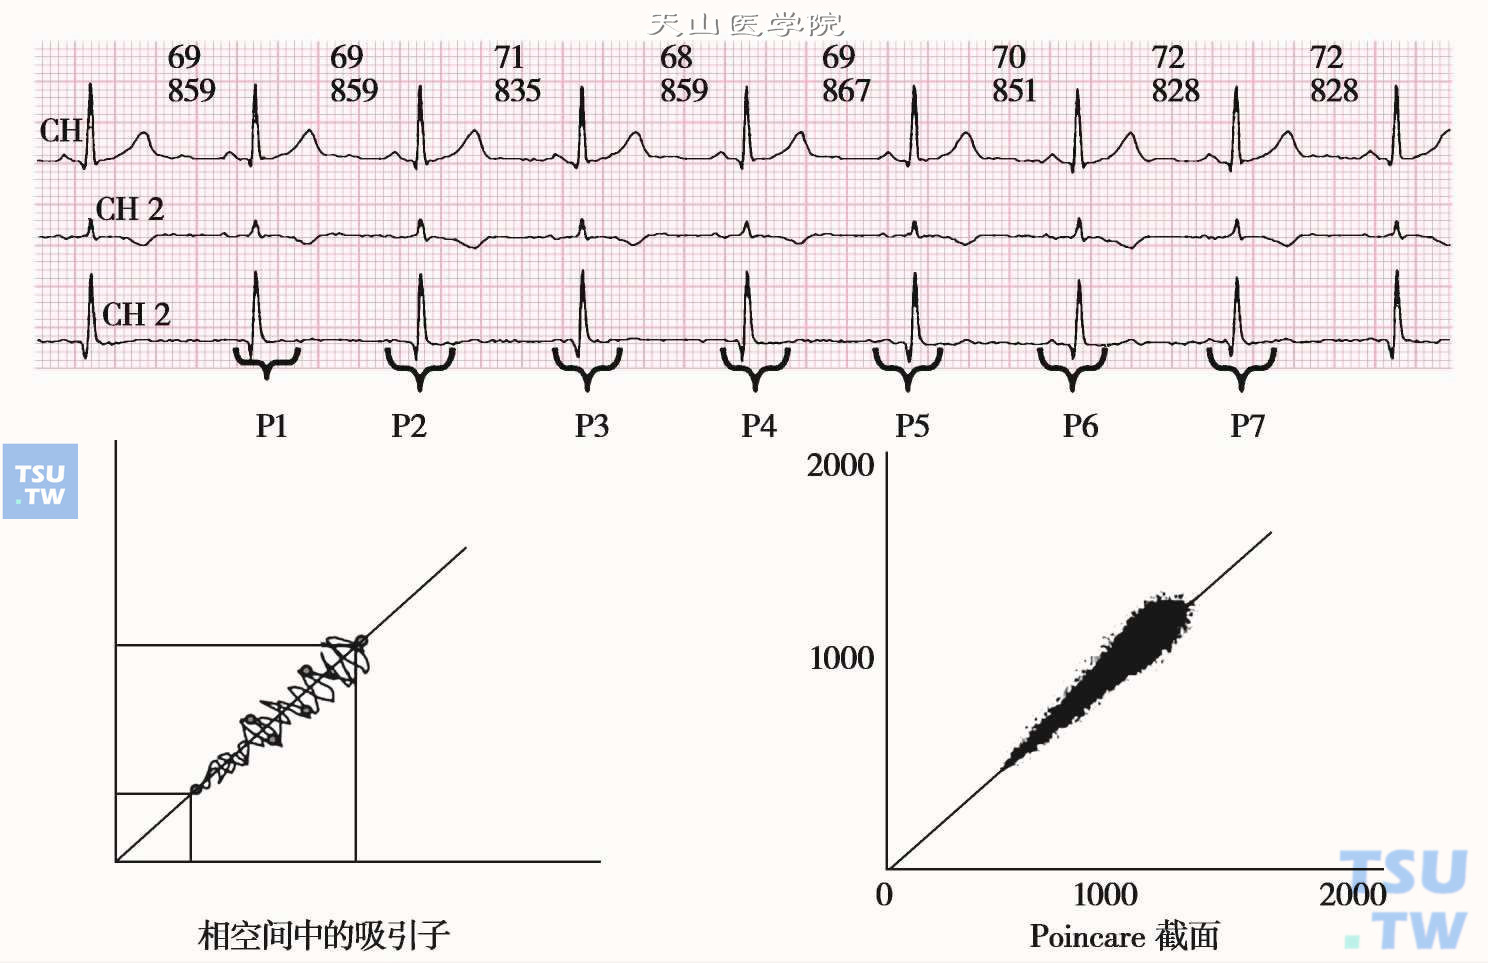  窦性心律系统的吸引子和Poincare截面；左图是正常人窦性心律的吸引子示意图；右图是正常人24小时窦性心律吸引子的Poincare截面，即心电散点图